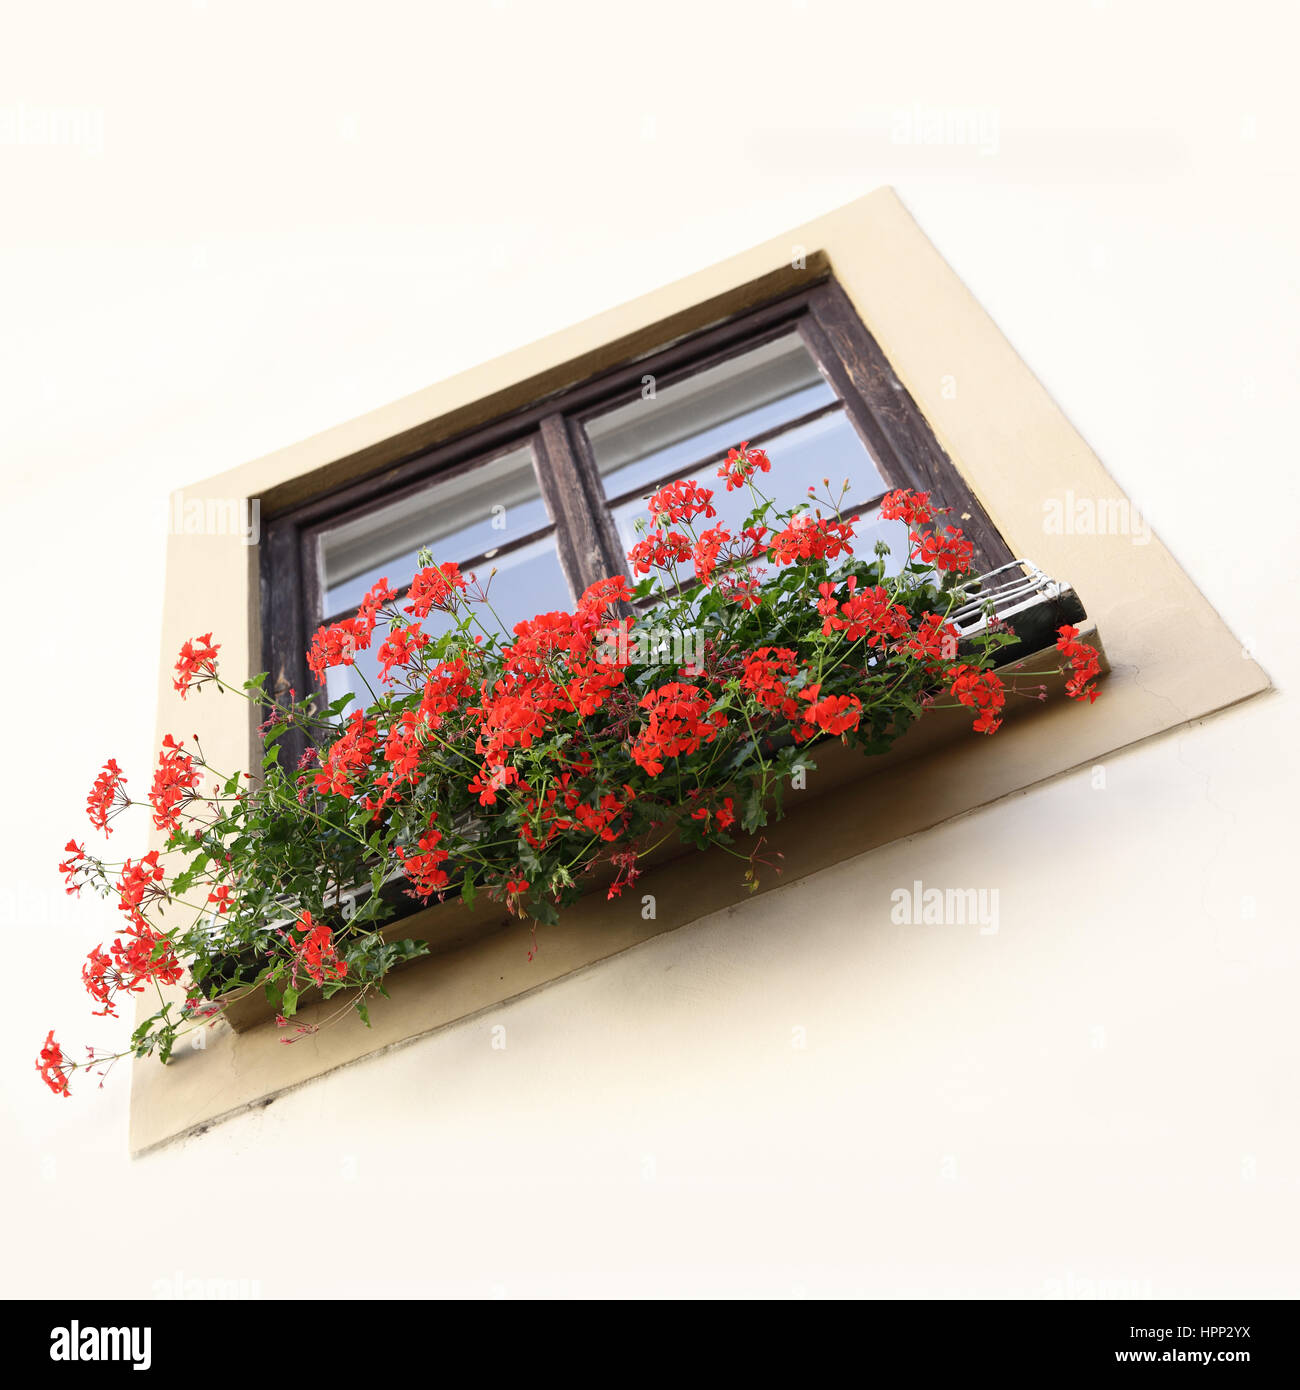 Cache-pot sur un rebord de fenêtre avec les fleurs rouges Banque D'Images